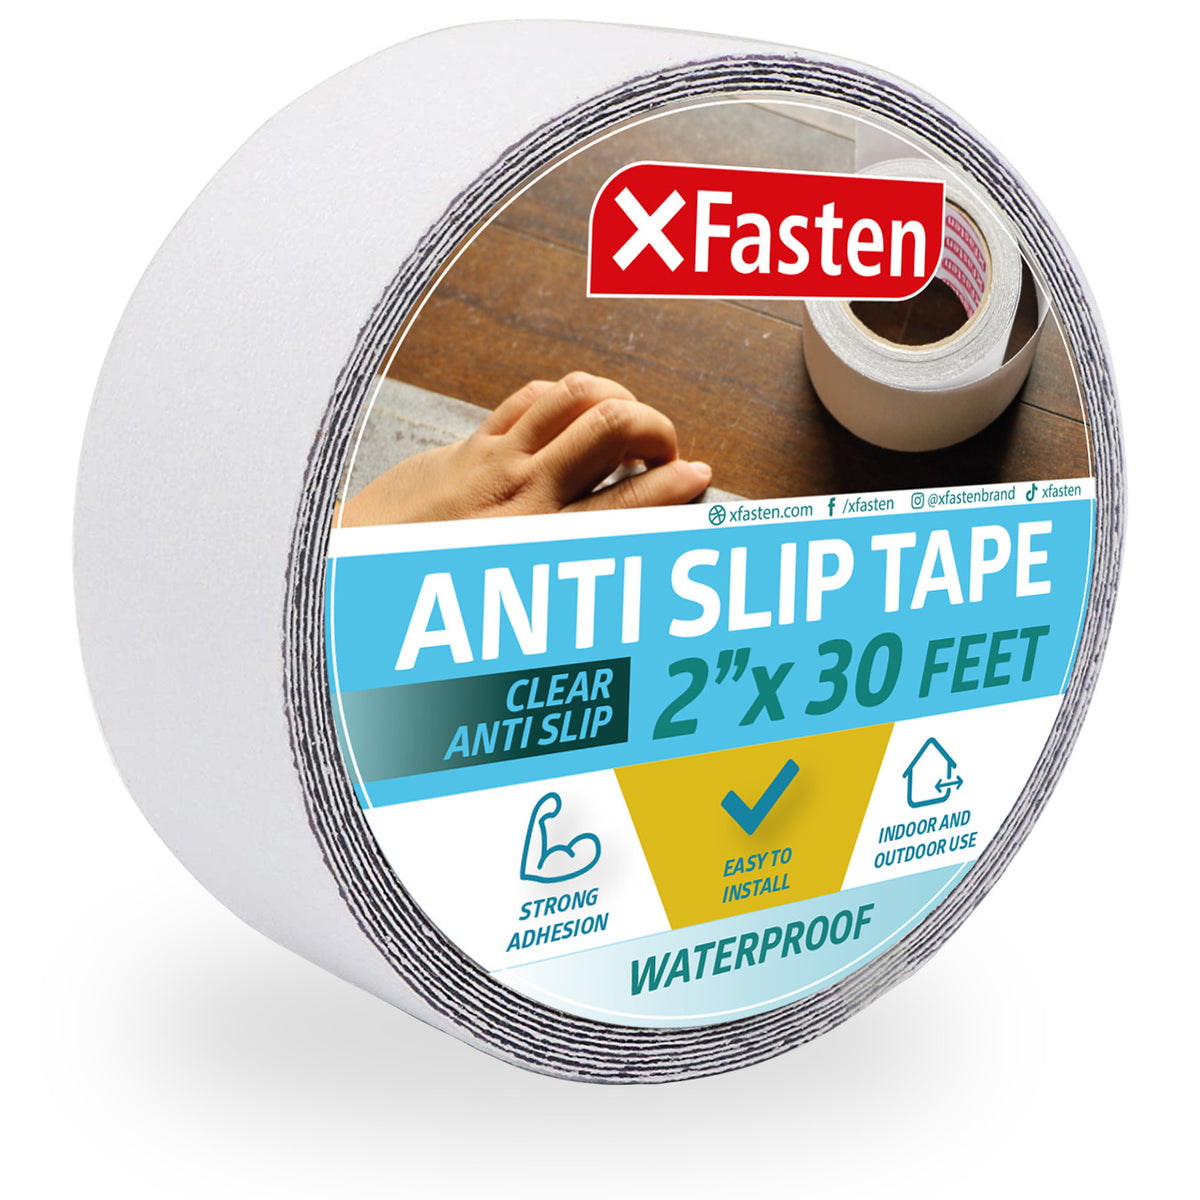 Anti Slip Tape Clear